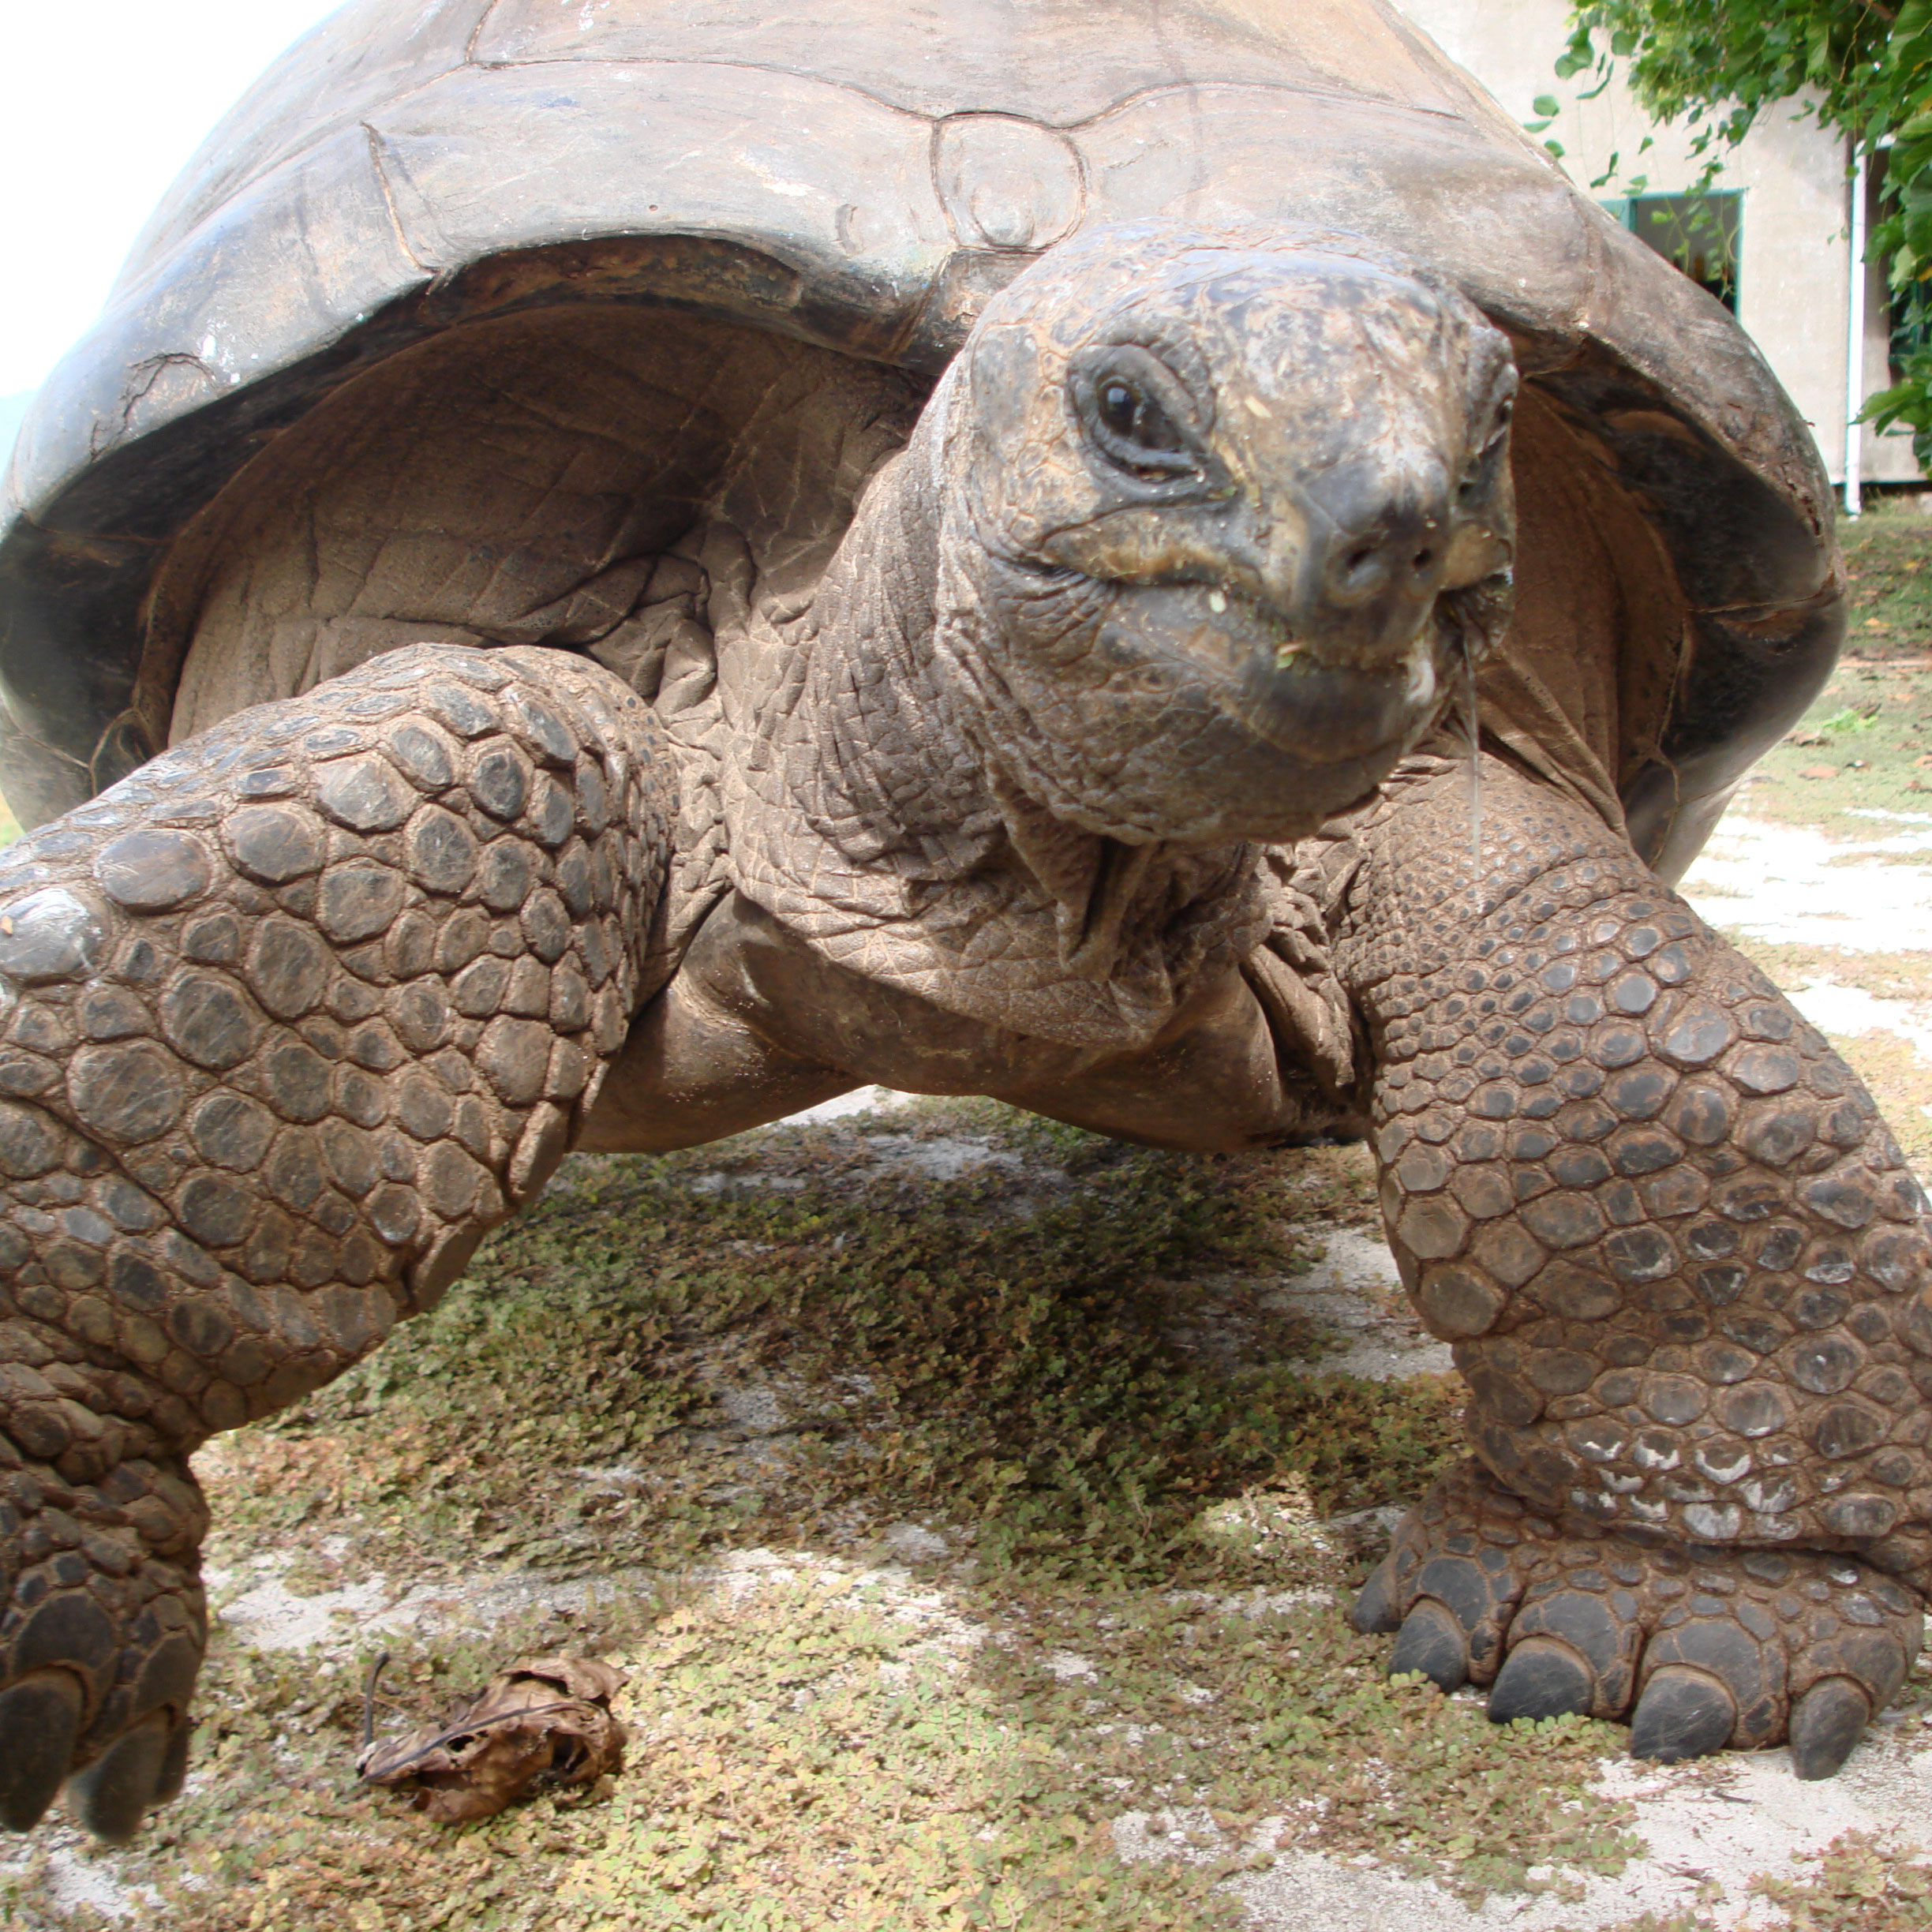 Turtle in Seychelles by Inge